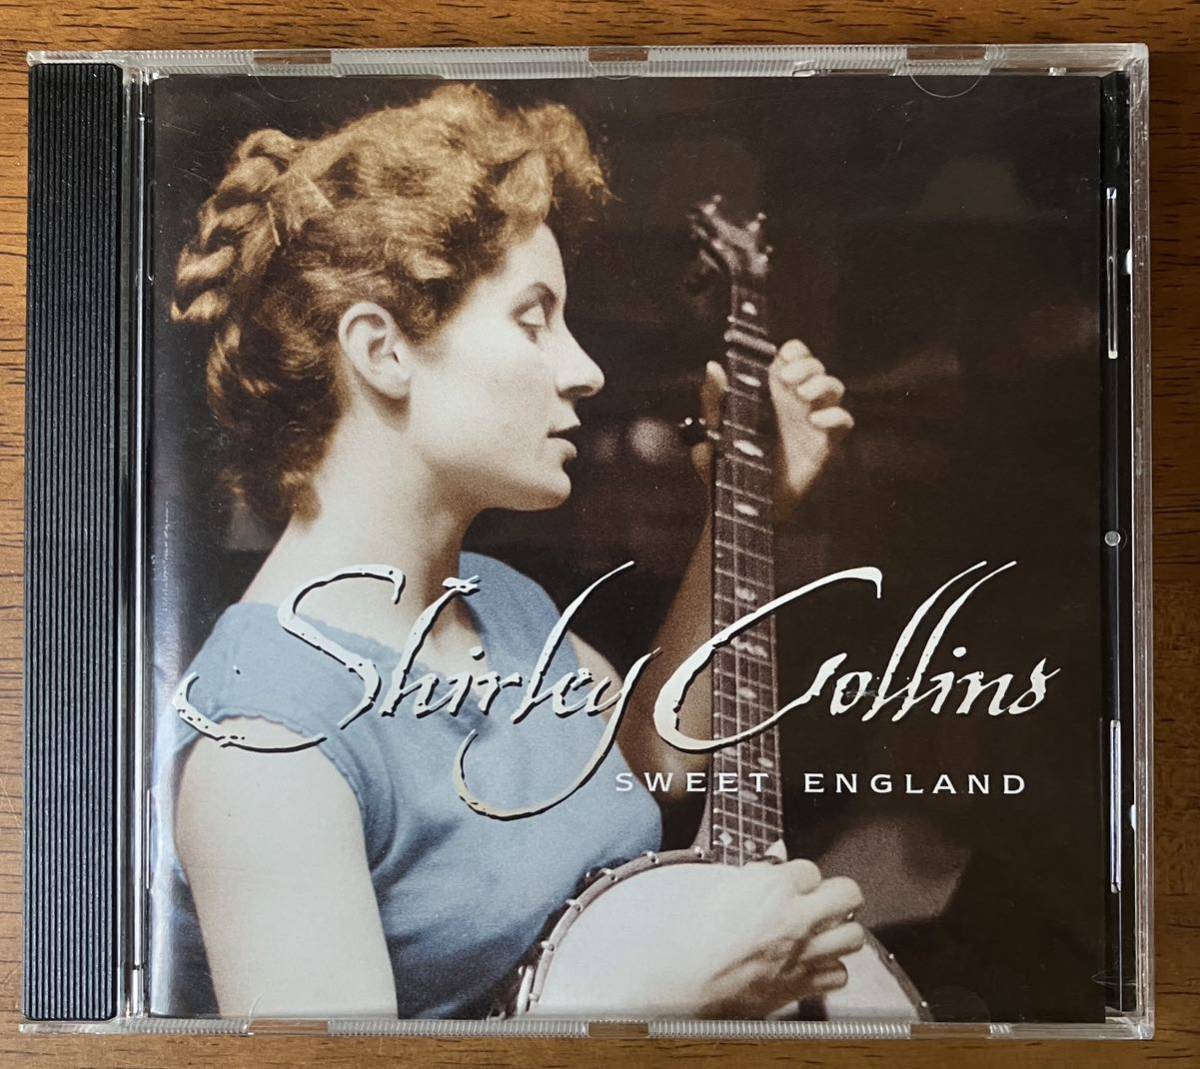 「SWEET ENGLAND / スウィート・イングランド」SHIRLEY COLLINS シャーリー・コリンズ 輸入盤CD 英国フォークトラッド 1959年作 1999年発の画像1